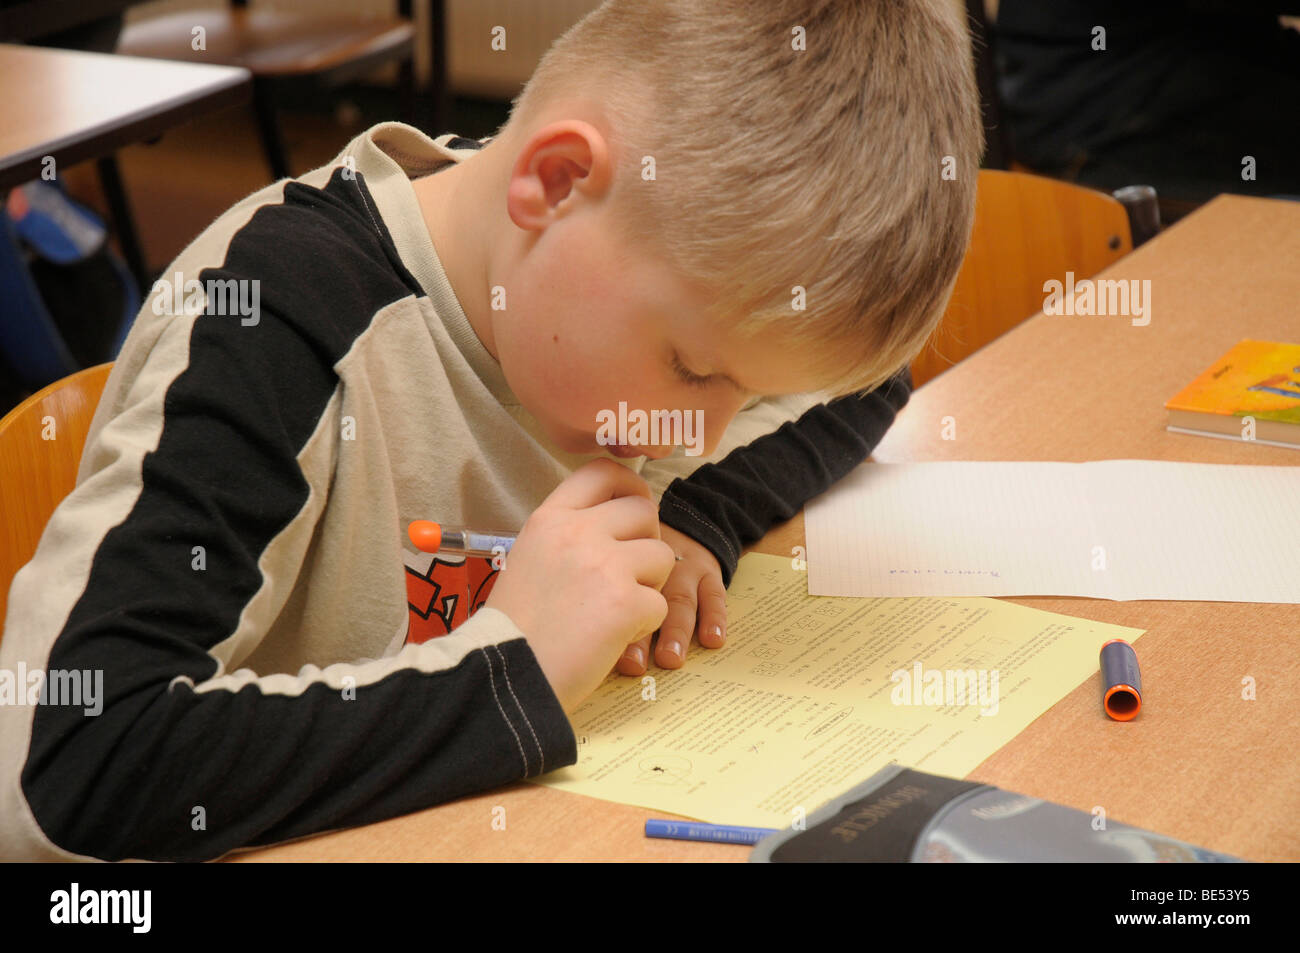 Écolier, 10 ans, lors d'un examen Banque D'Images